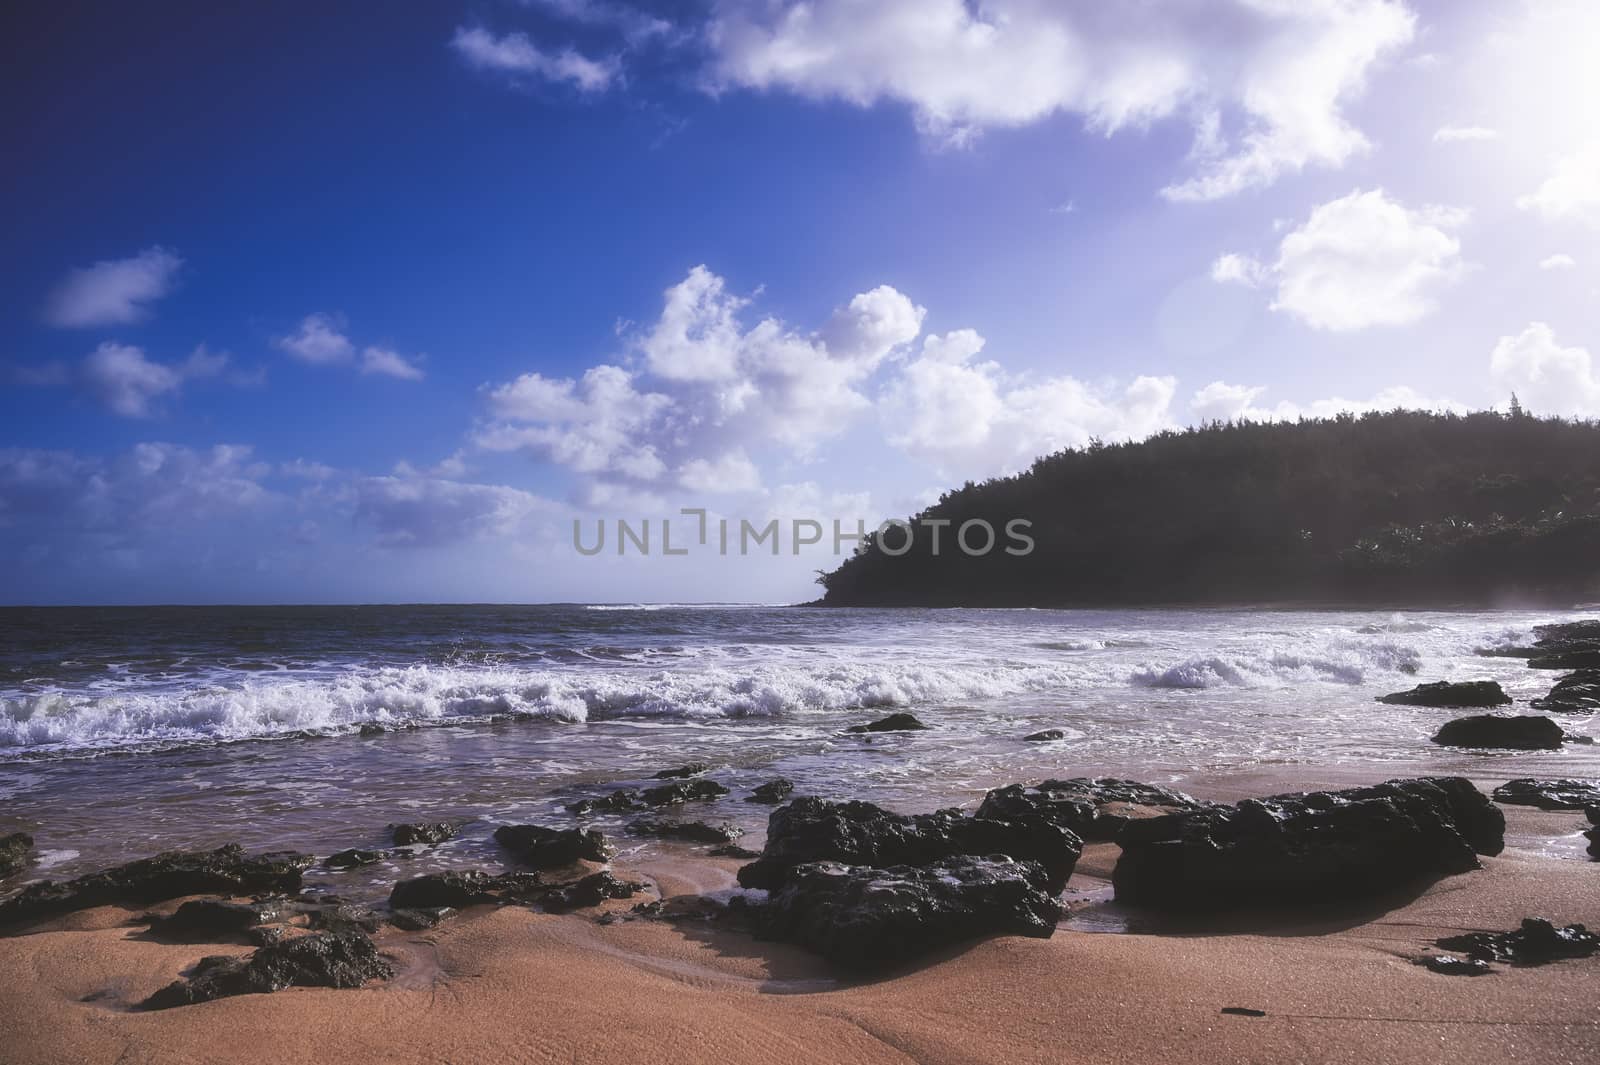 A beach on Kauai, Hawaii by jbyard22